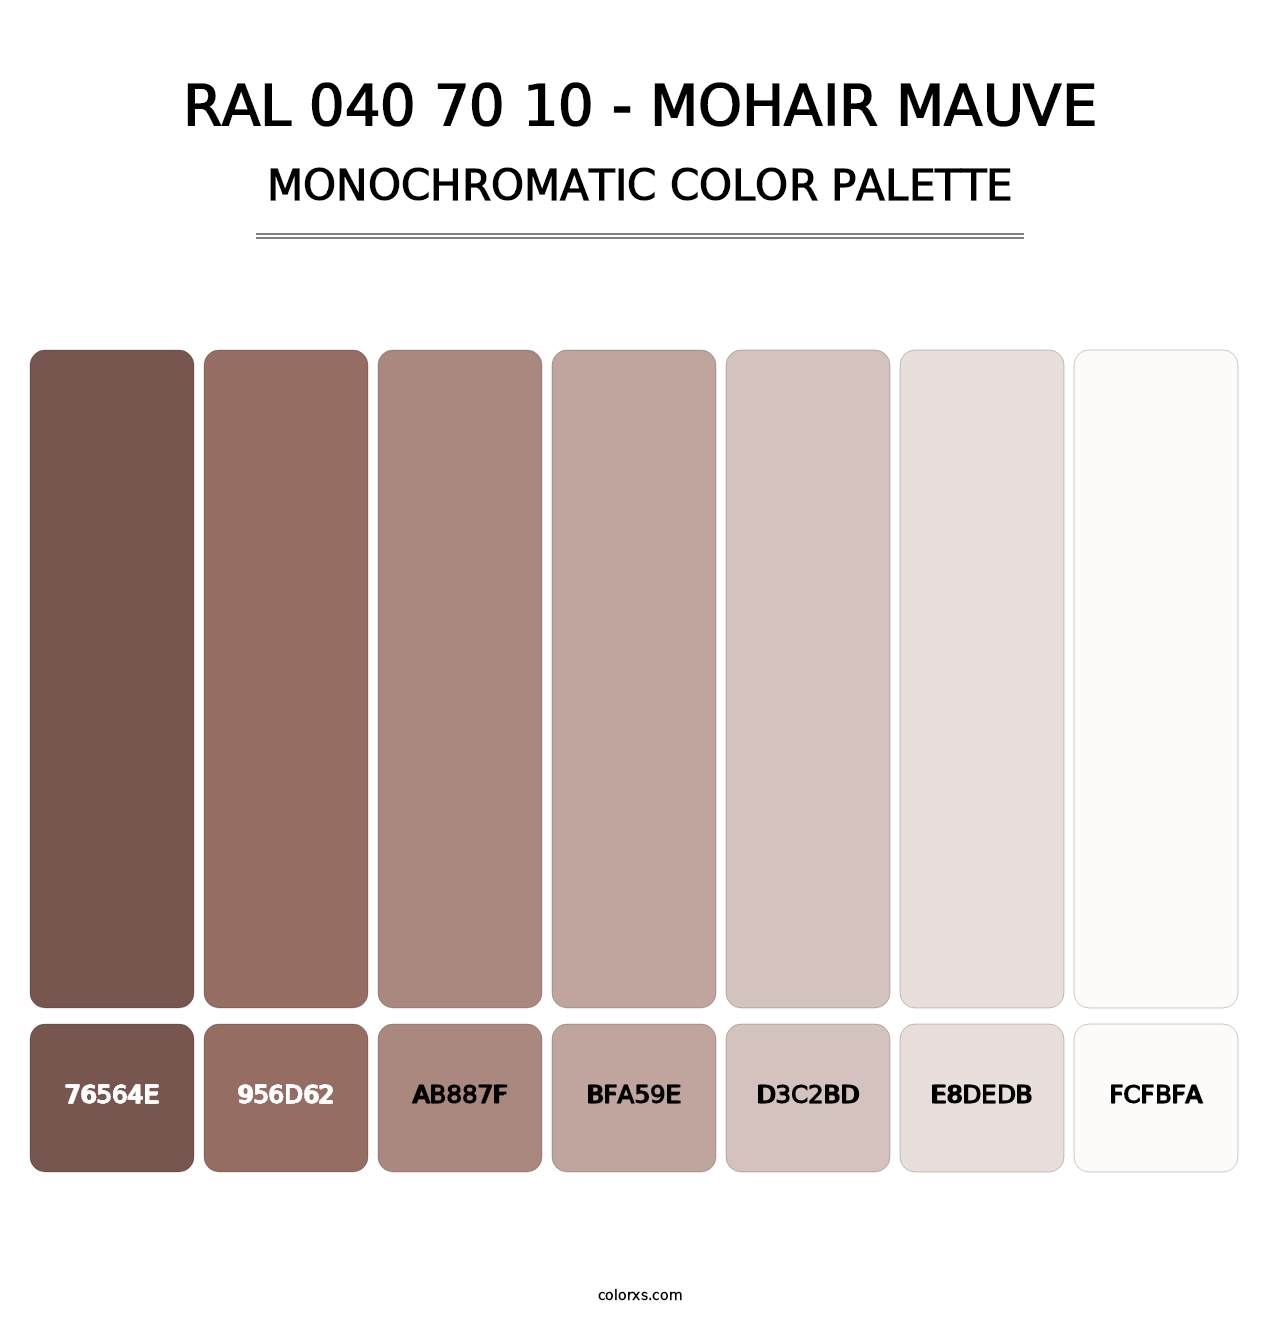 RAL 040 70 10 - Mohair Mauve - Monochromatic Color Palette